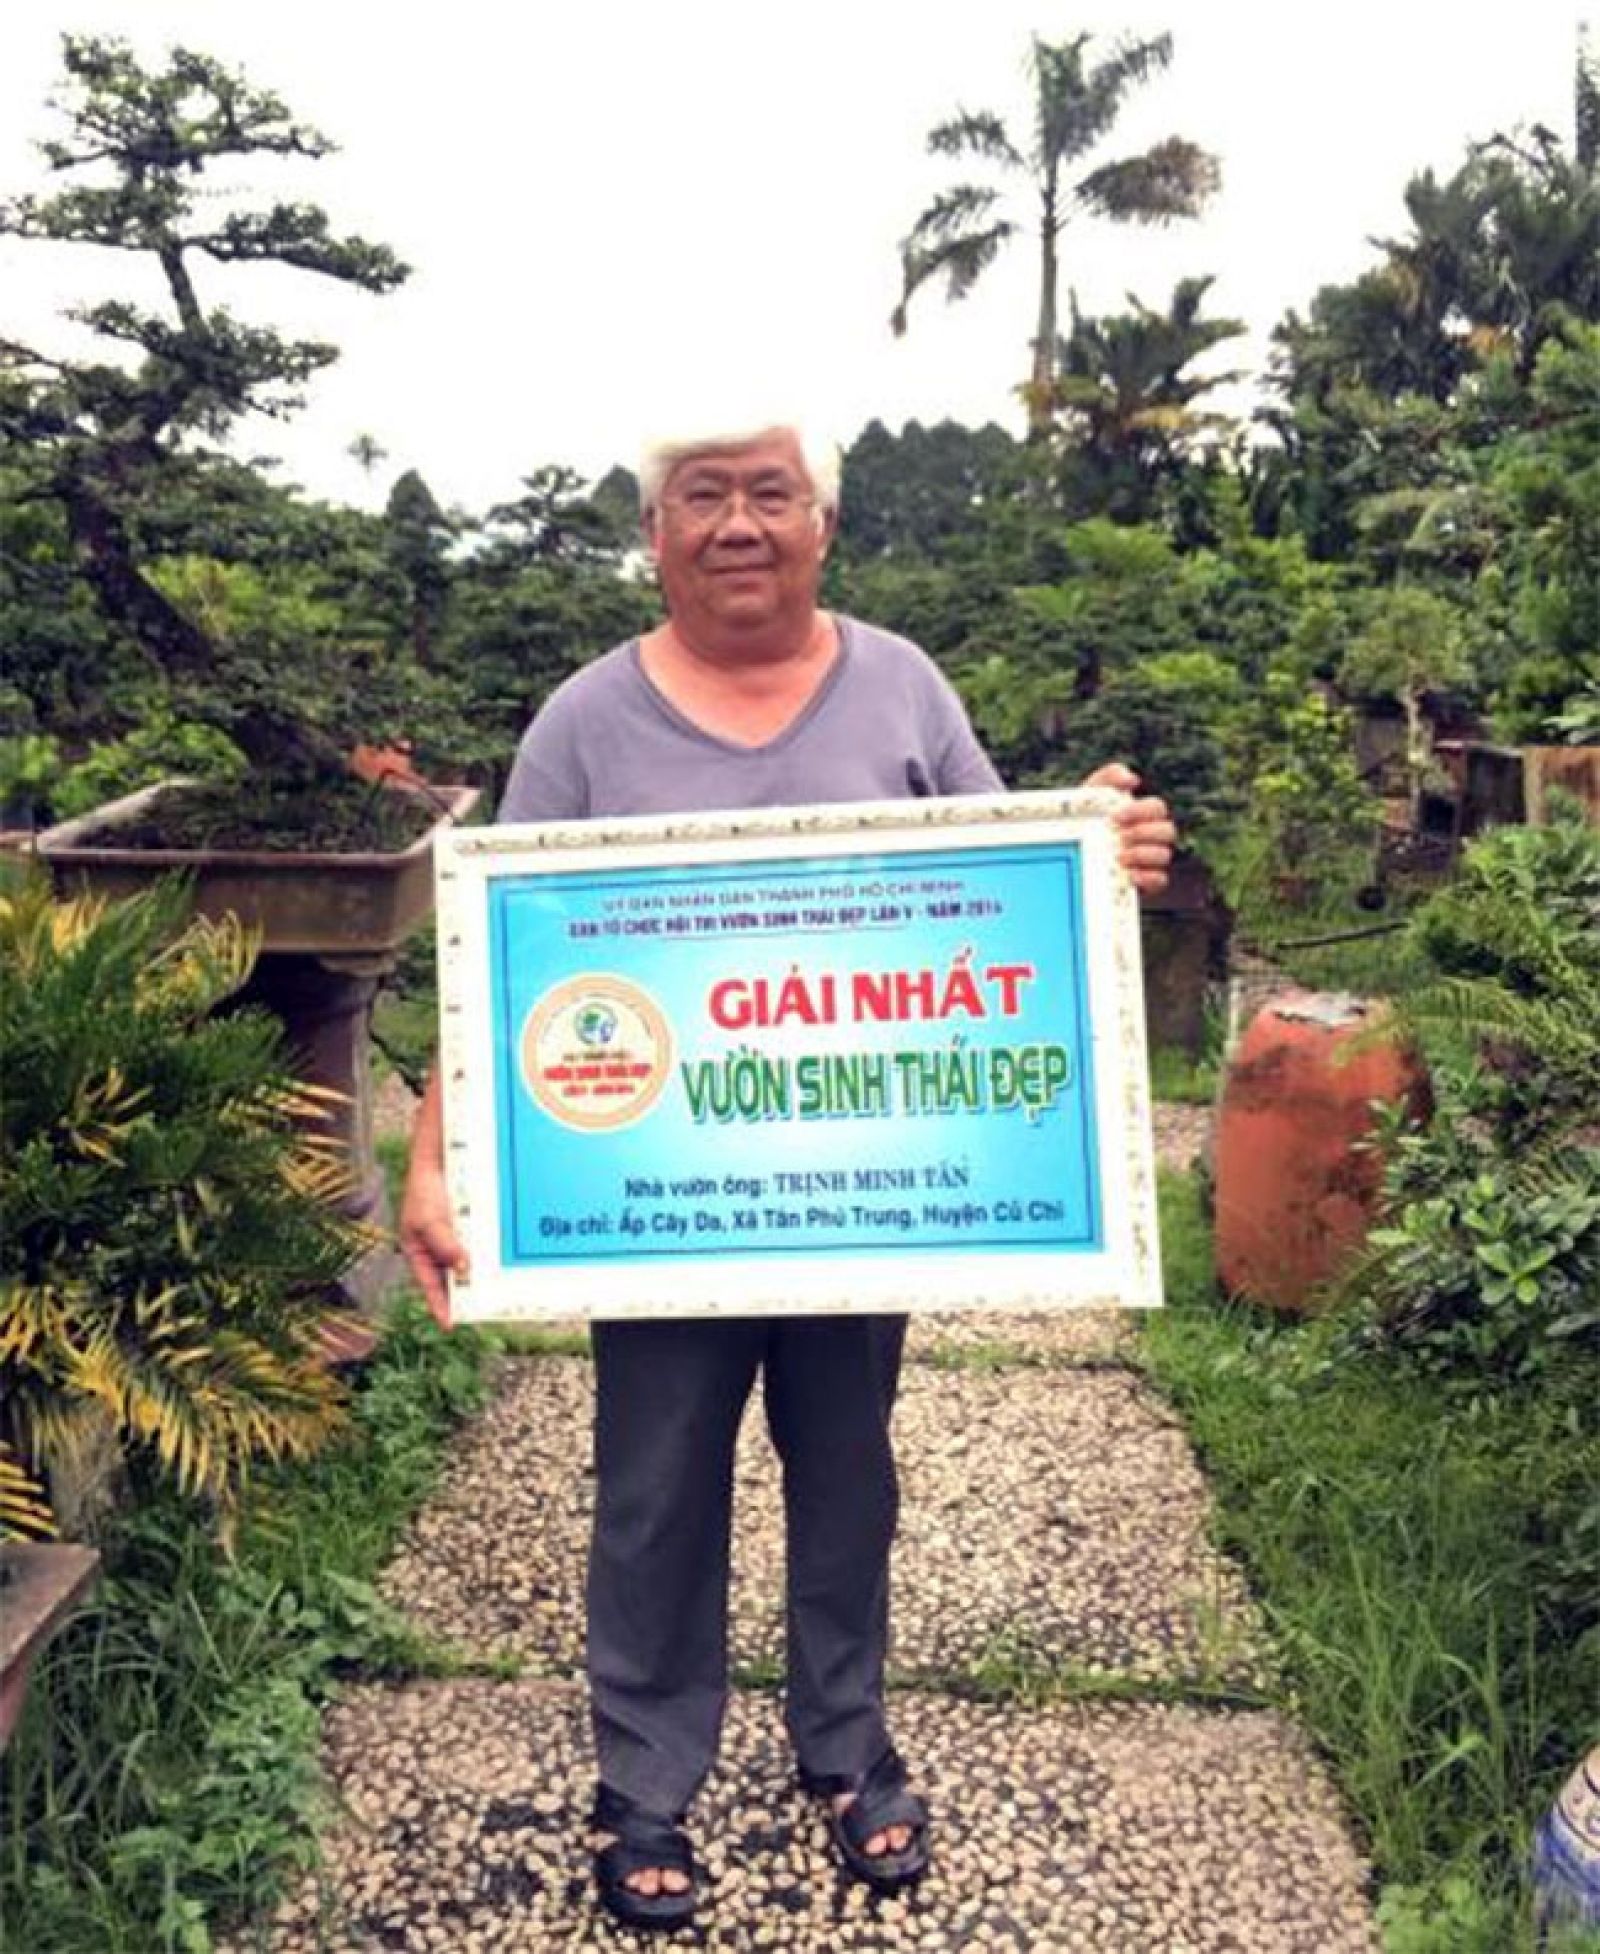  Vườn cây cảnh của ông Trịnh Minh Tân đã đoạt giải nhất “Vườn sinh thái đẹp” trong Hội thi Vườn sinh thái đẹp do UBND TP.HCM tổ chức năm 2014. Lê Quang